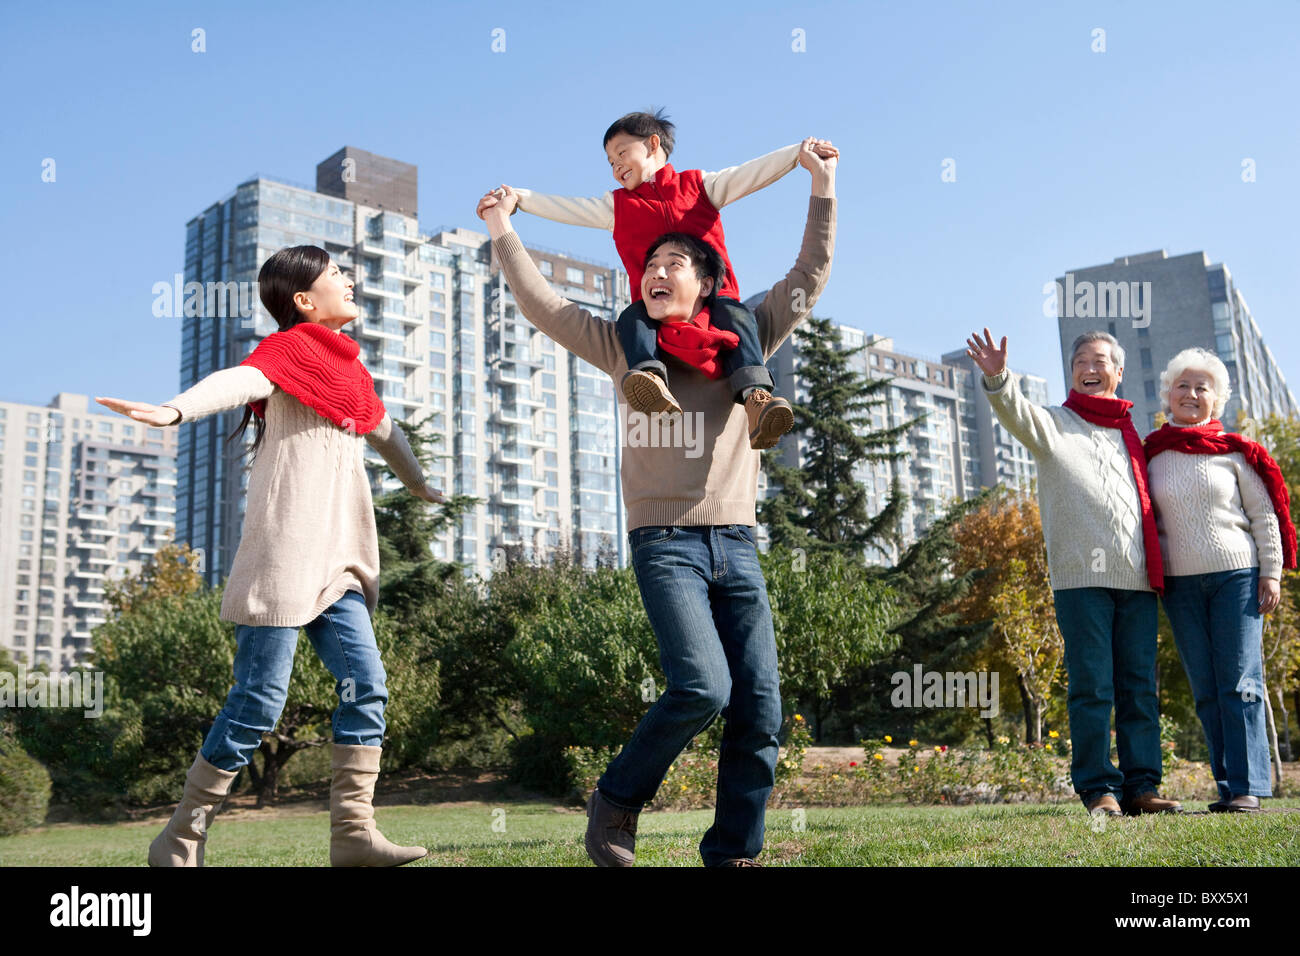 Three Generation Family Enjoying a Park in Autumn Stock Photo